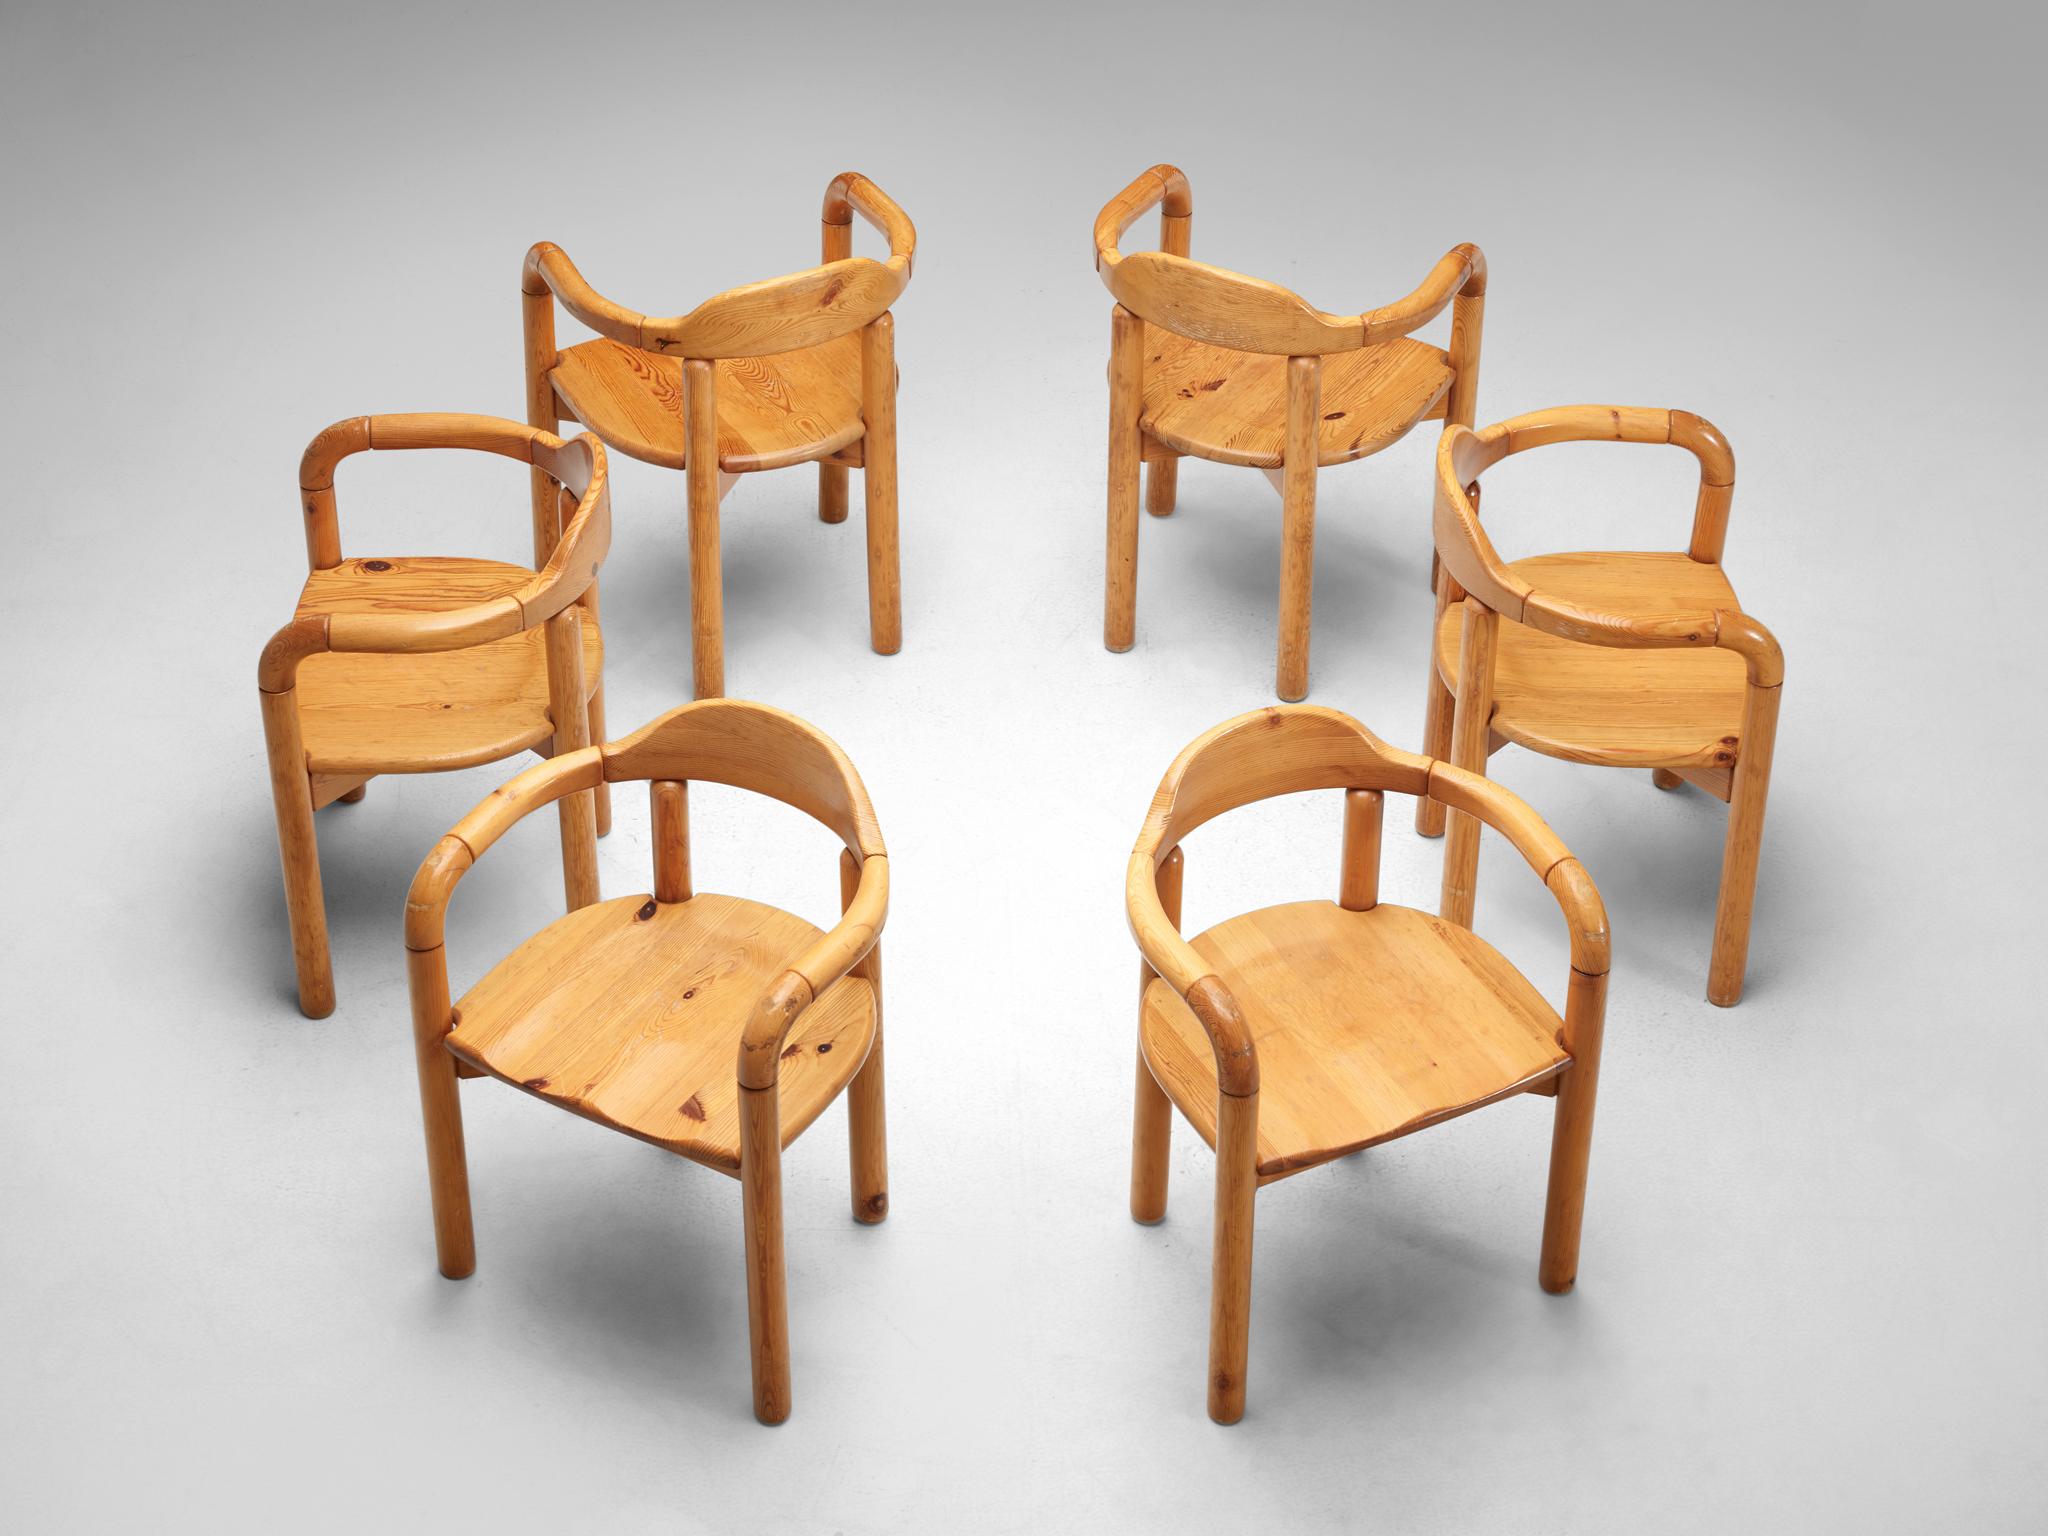 Rainer Daumiller pour Hirtshals Savvaerk, fauteuils, pin, Danemark, années 1970.

Très bel ensemble de six fauteuils organiques et naturels en pin massif. Un design simpliste avec une assise ronde et une attention totale pour l'expression naturelle